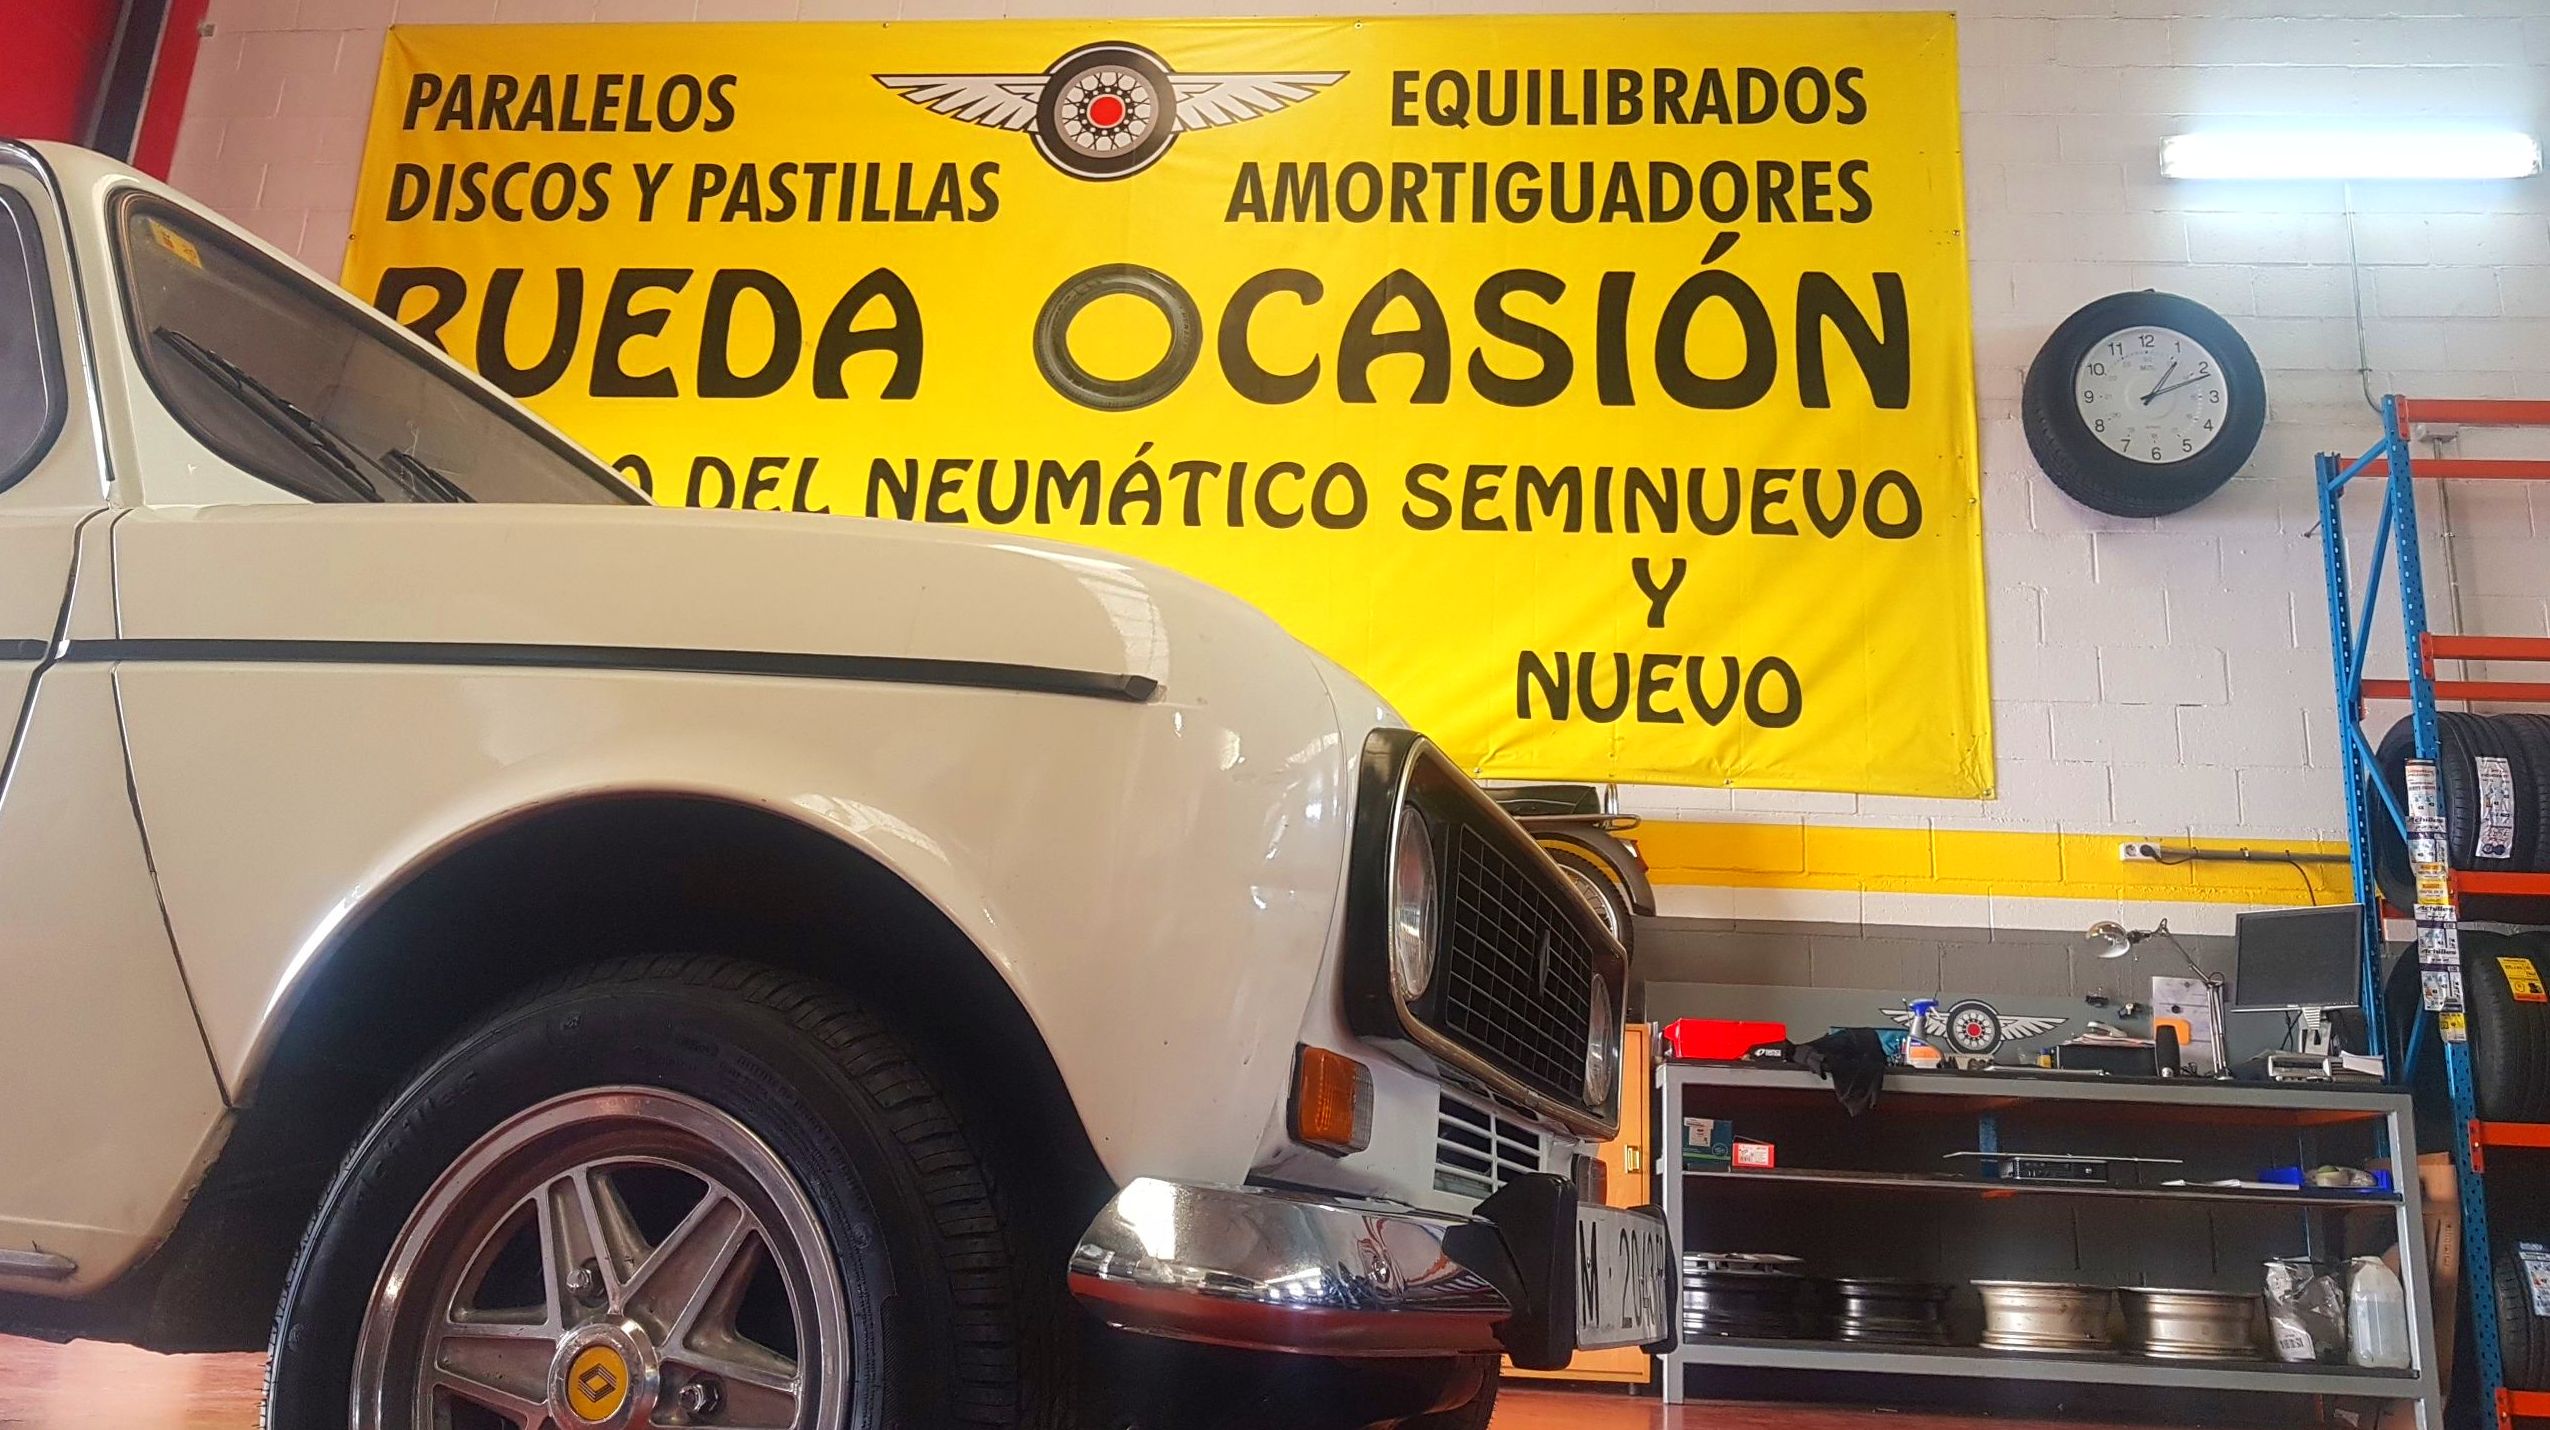 Foto 3 de Neumáticos en Colmenar Viejo | Rueda Ocasión